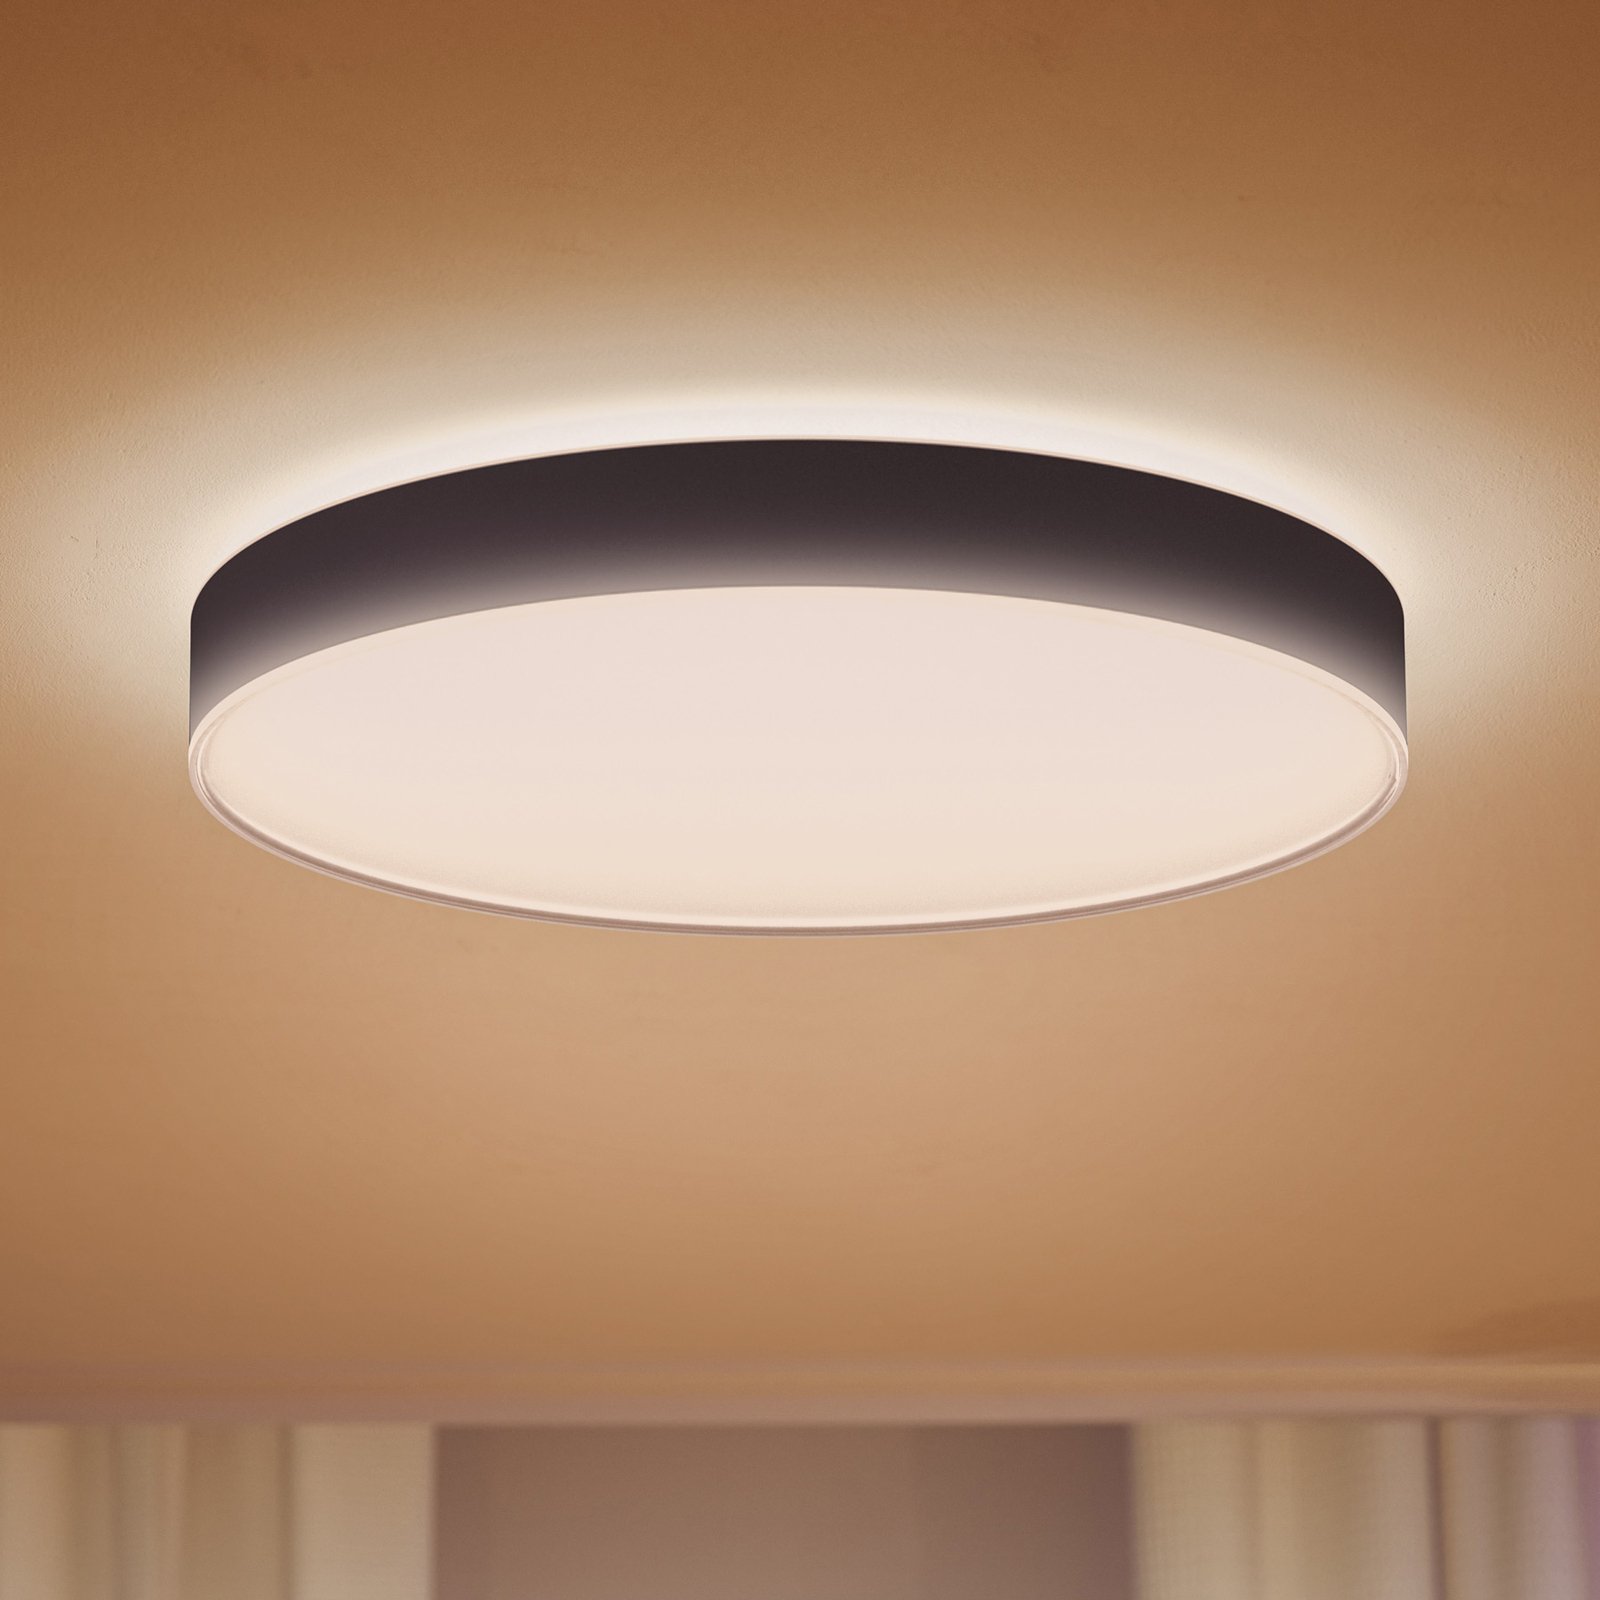 Philips Hue Enrave LED-Deckenlampe 55,1cm schwarz